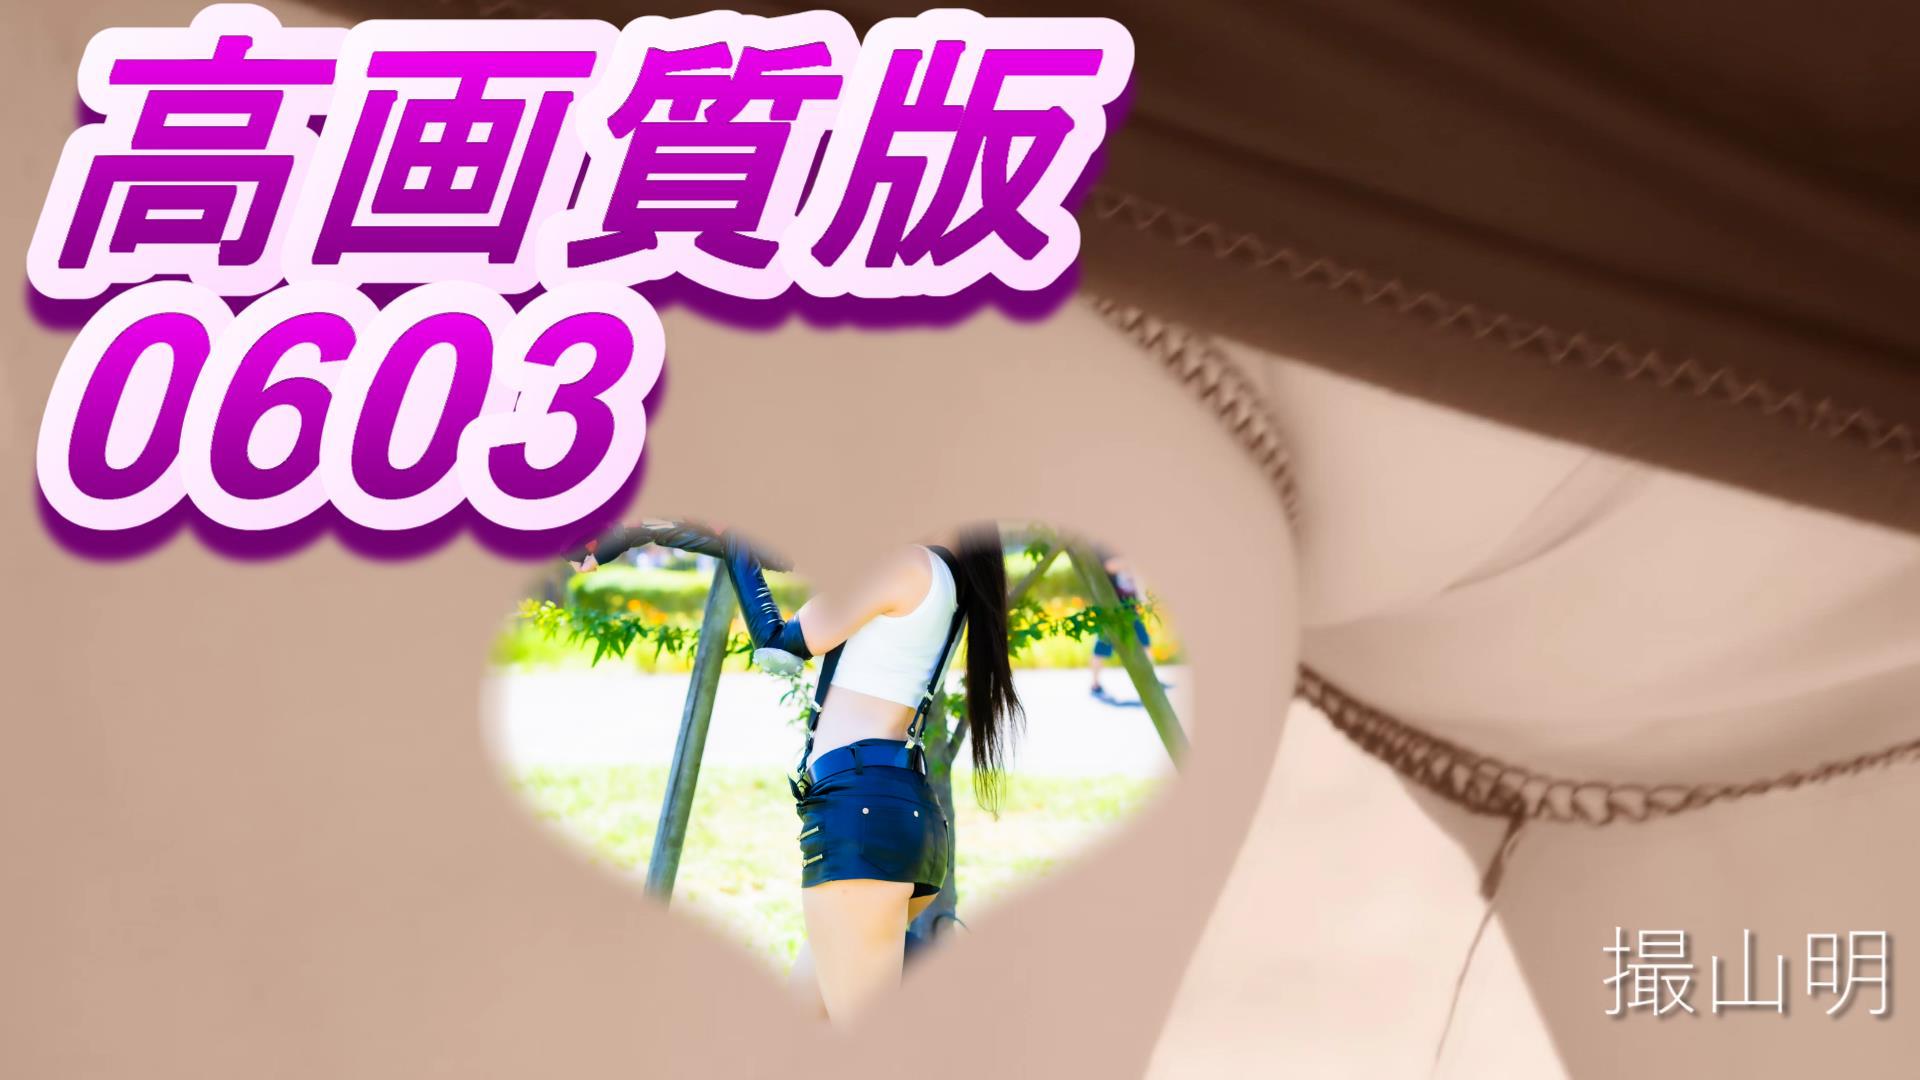 【高画質版0603】透けカメラでコスプレ美女がまるはだか！